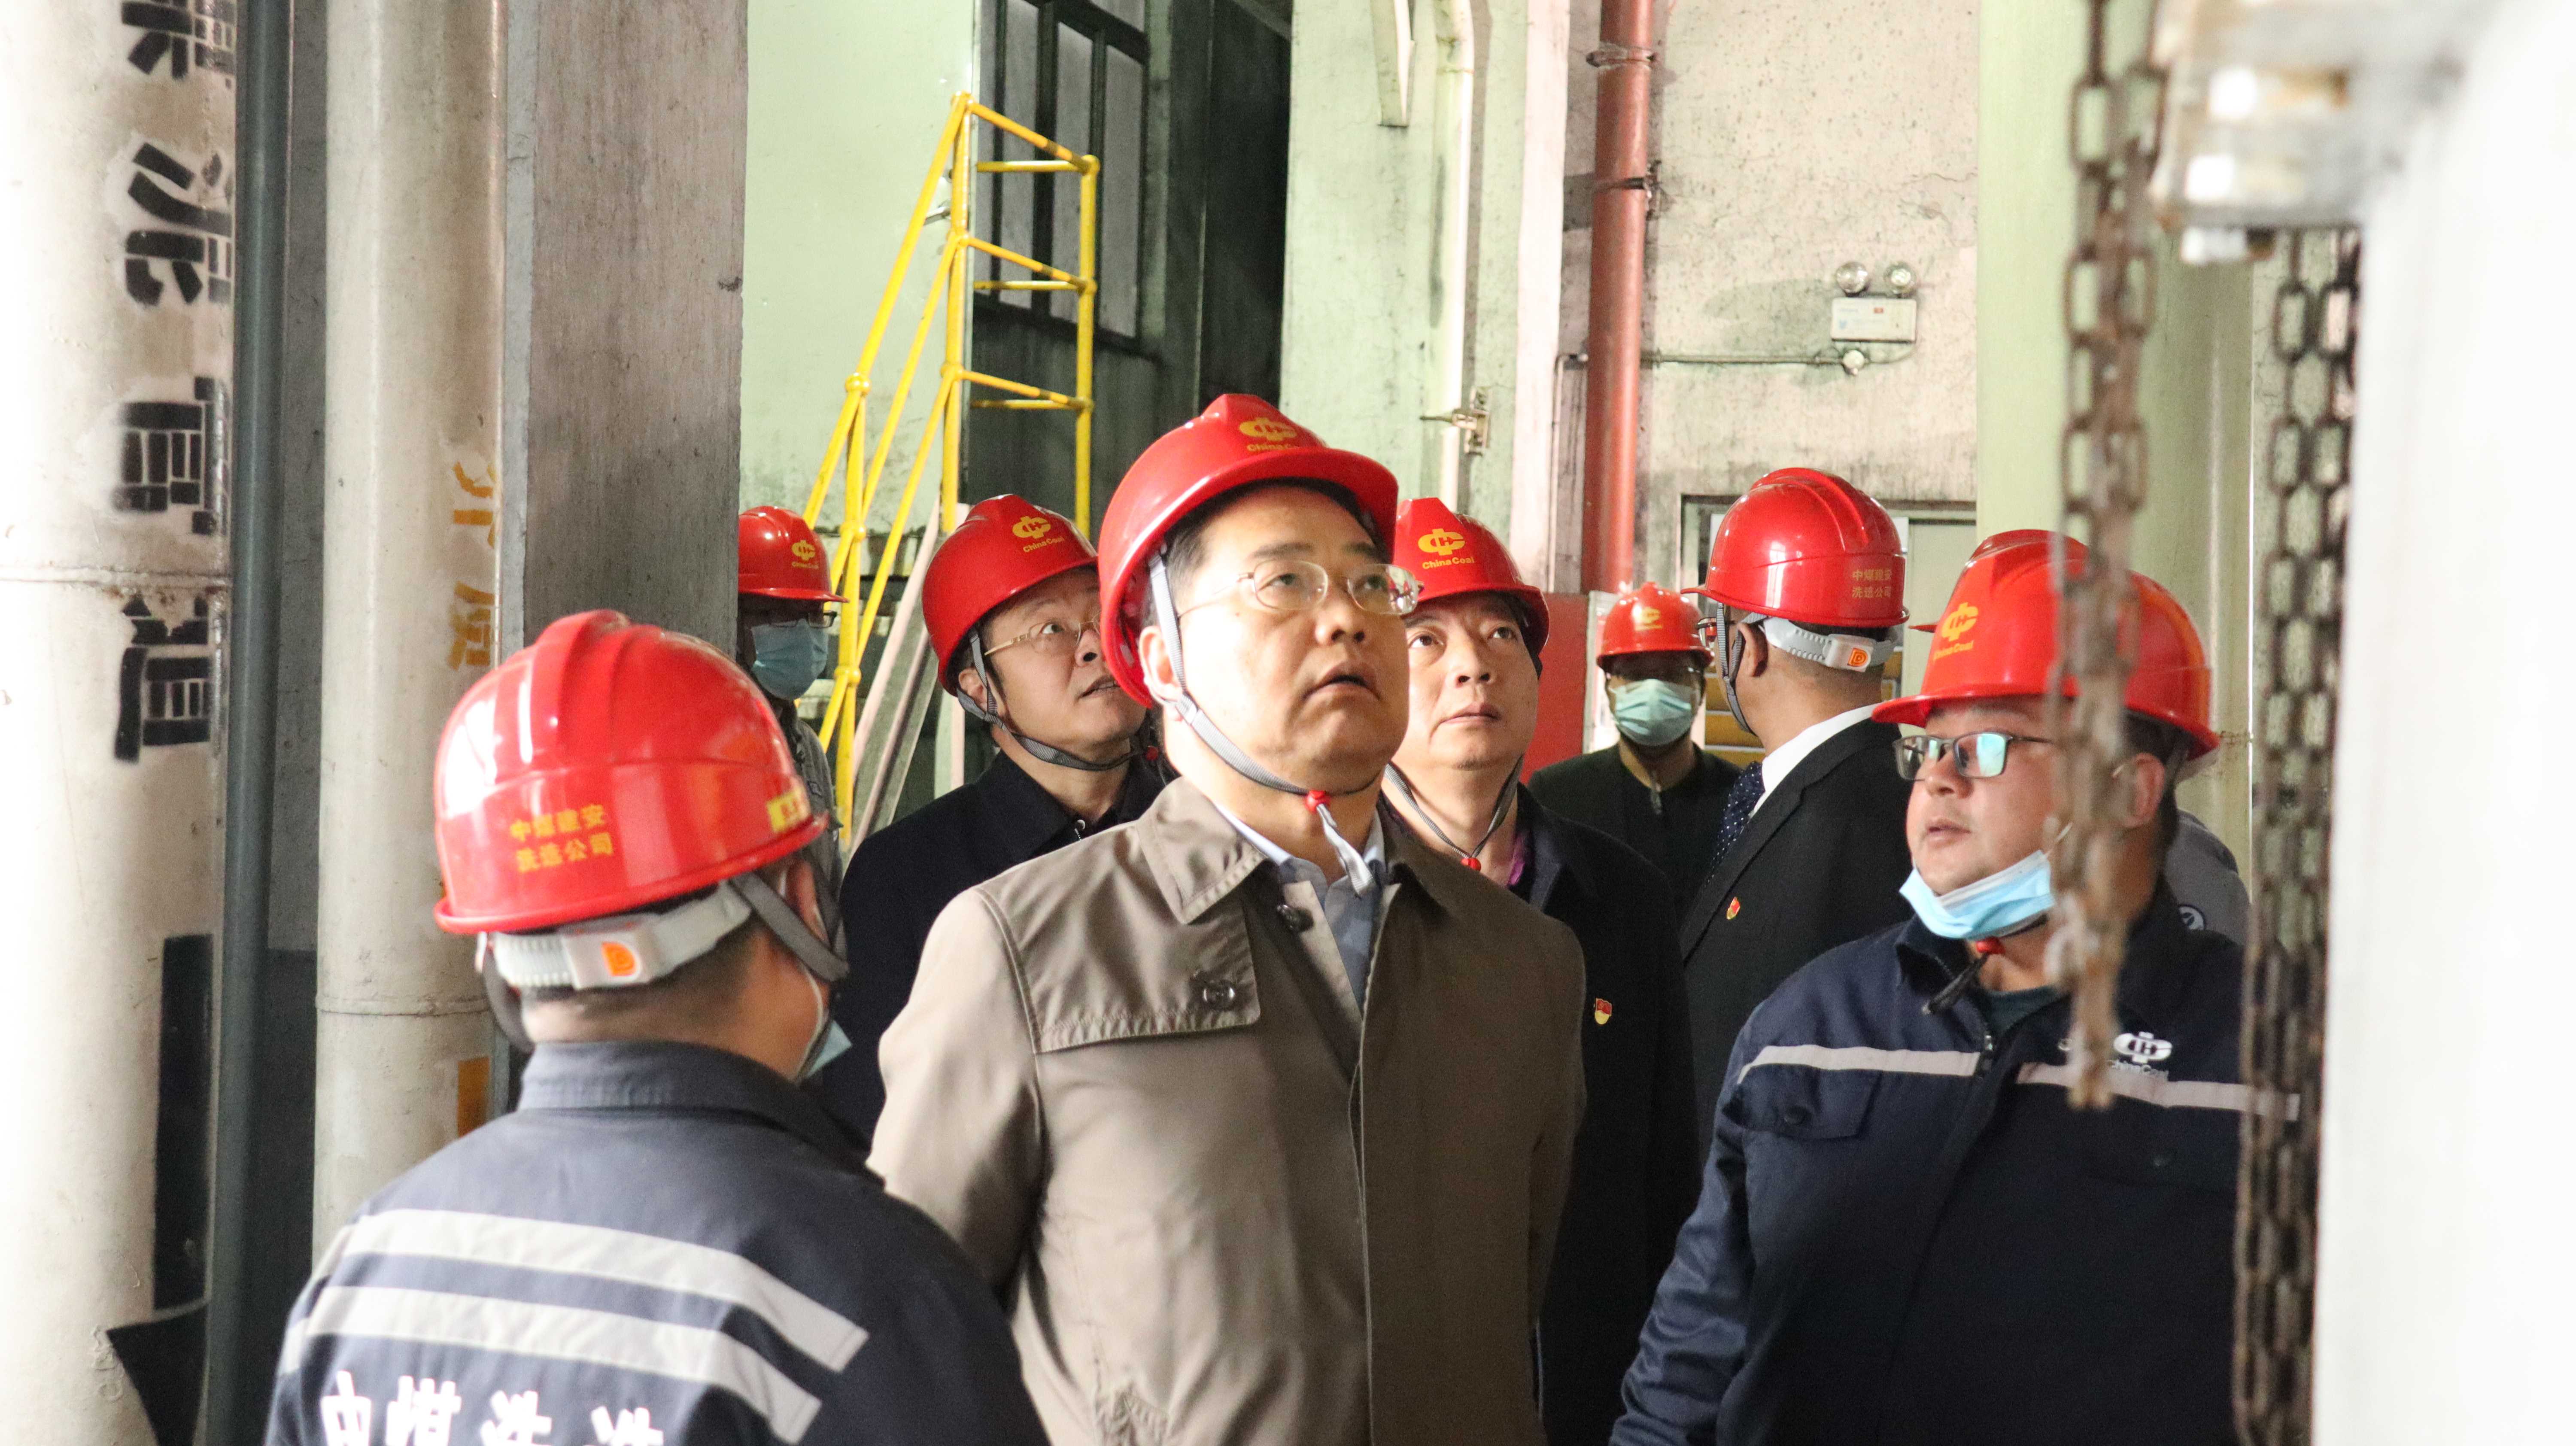 晋能控股装备制造集团王德璋董事长一行到访协会 - 煤机协会-头版新闻 - 中国煤炭工业协会